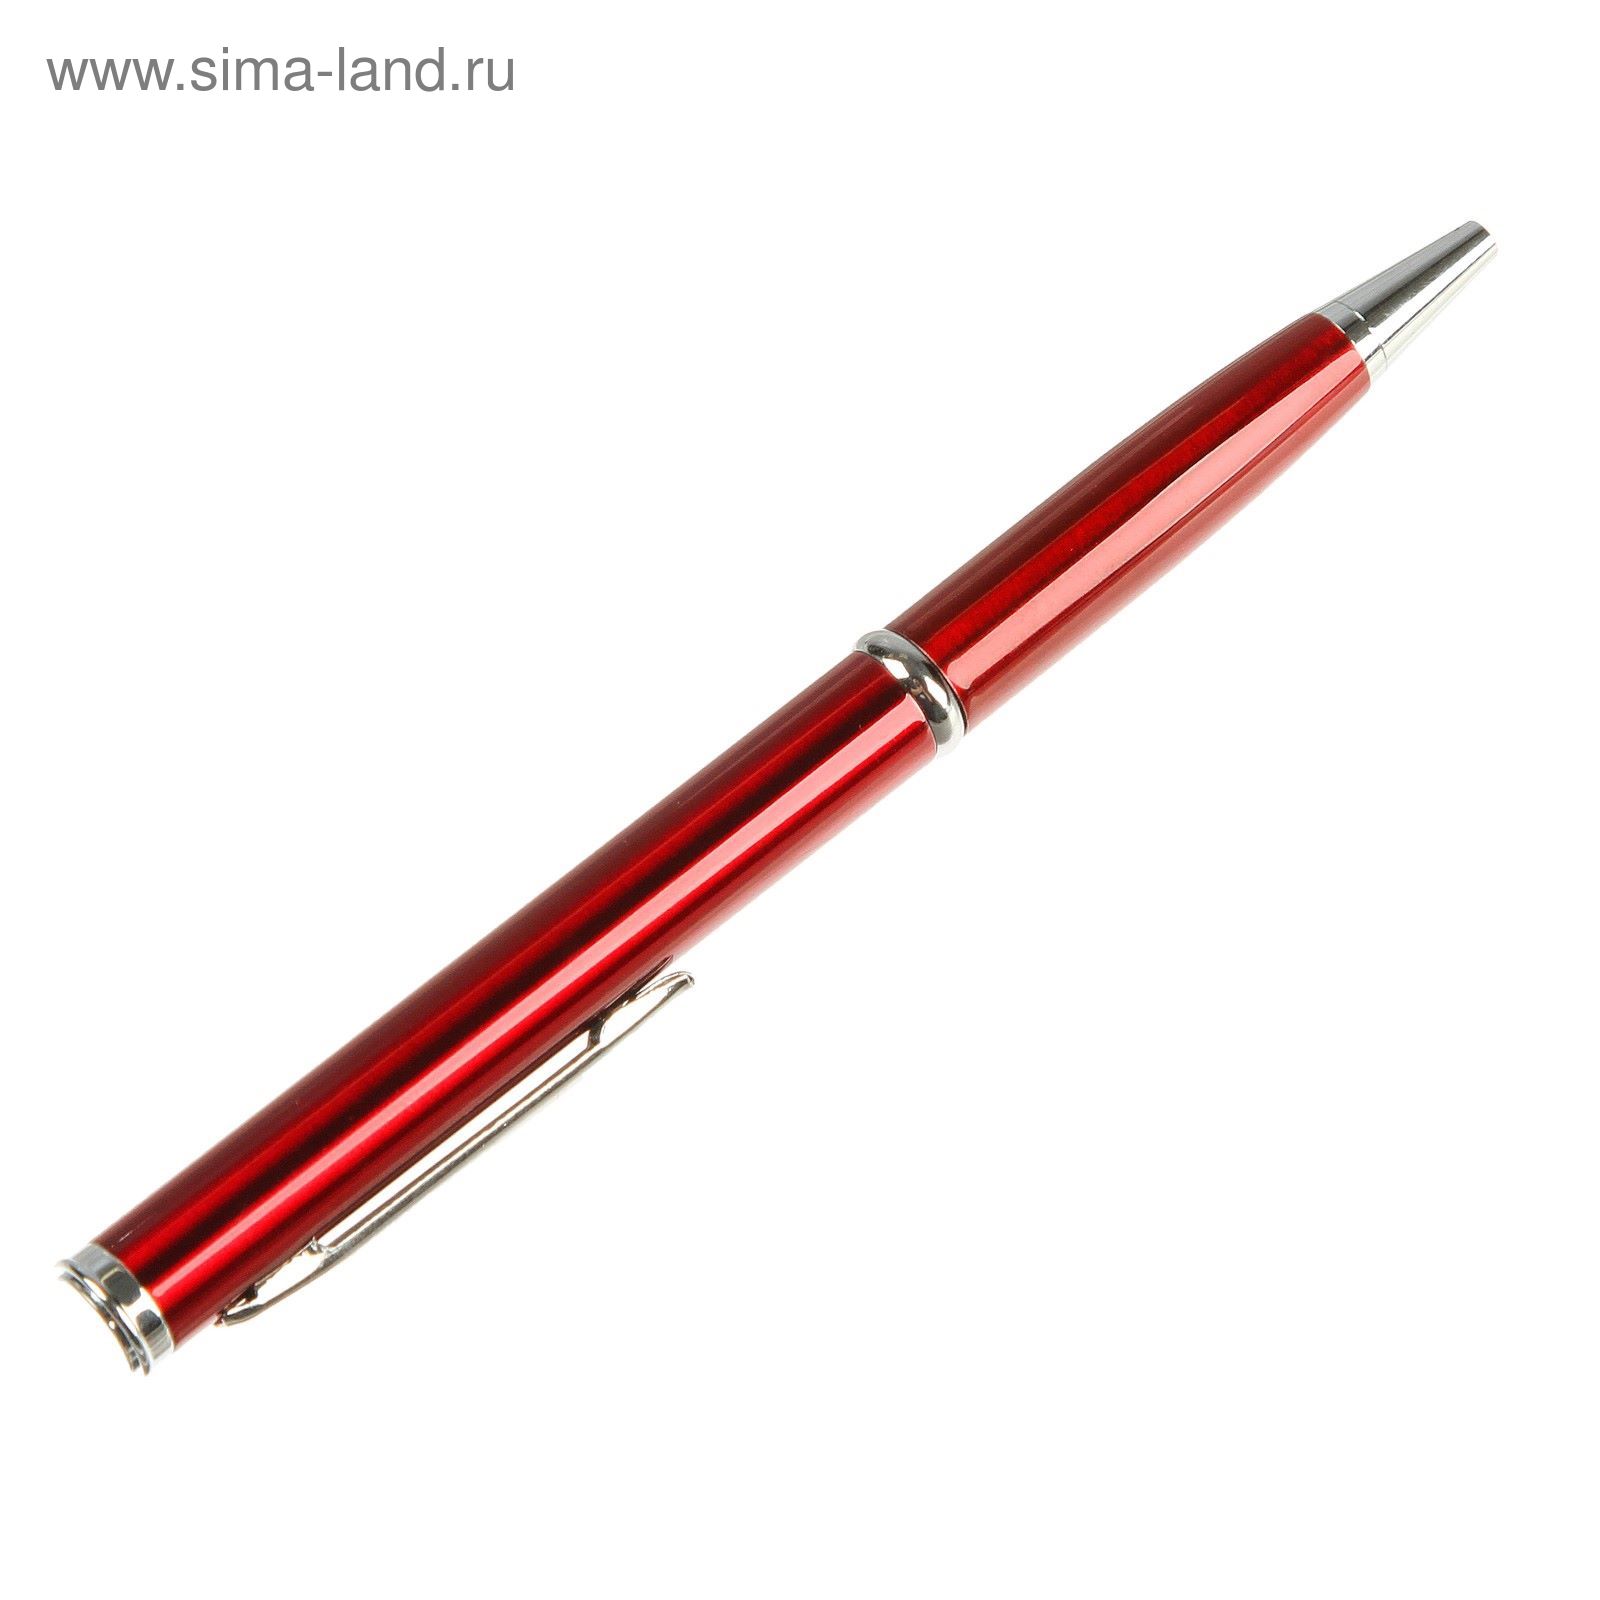 Нож-ручка, лезвие копьеобразное 5,5см, микс цветов, рукоять 7,2см